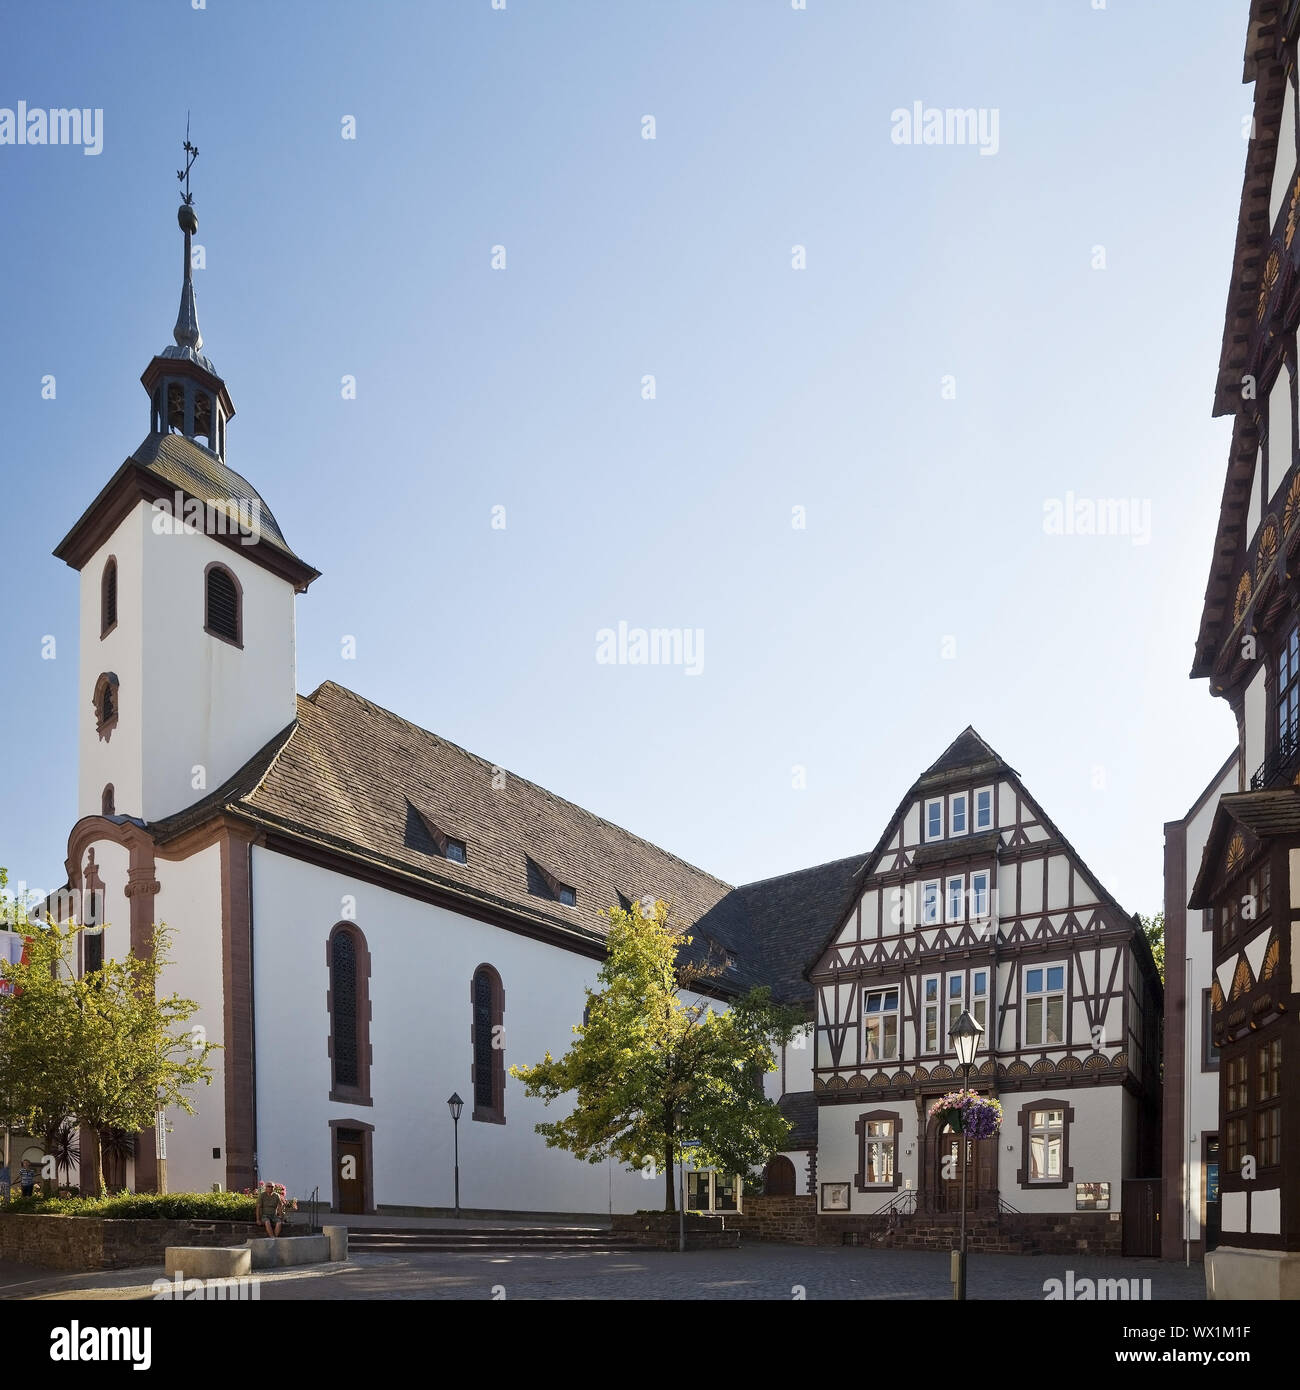 L'église Saint Nikolai, vieille ville, Hoexter, Weserbergland, Nordrhein-Westfalen, Germany, Europe Banque D'Images